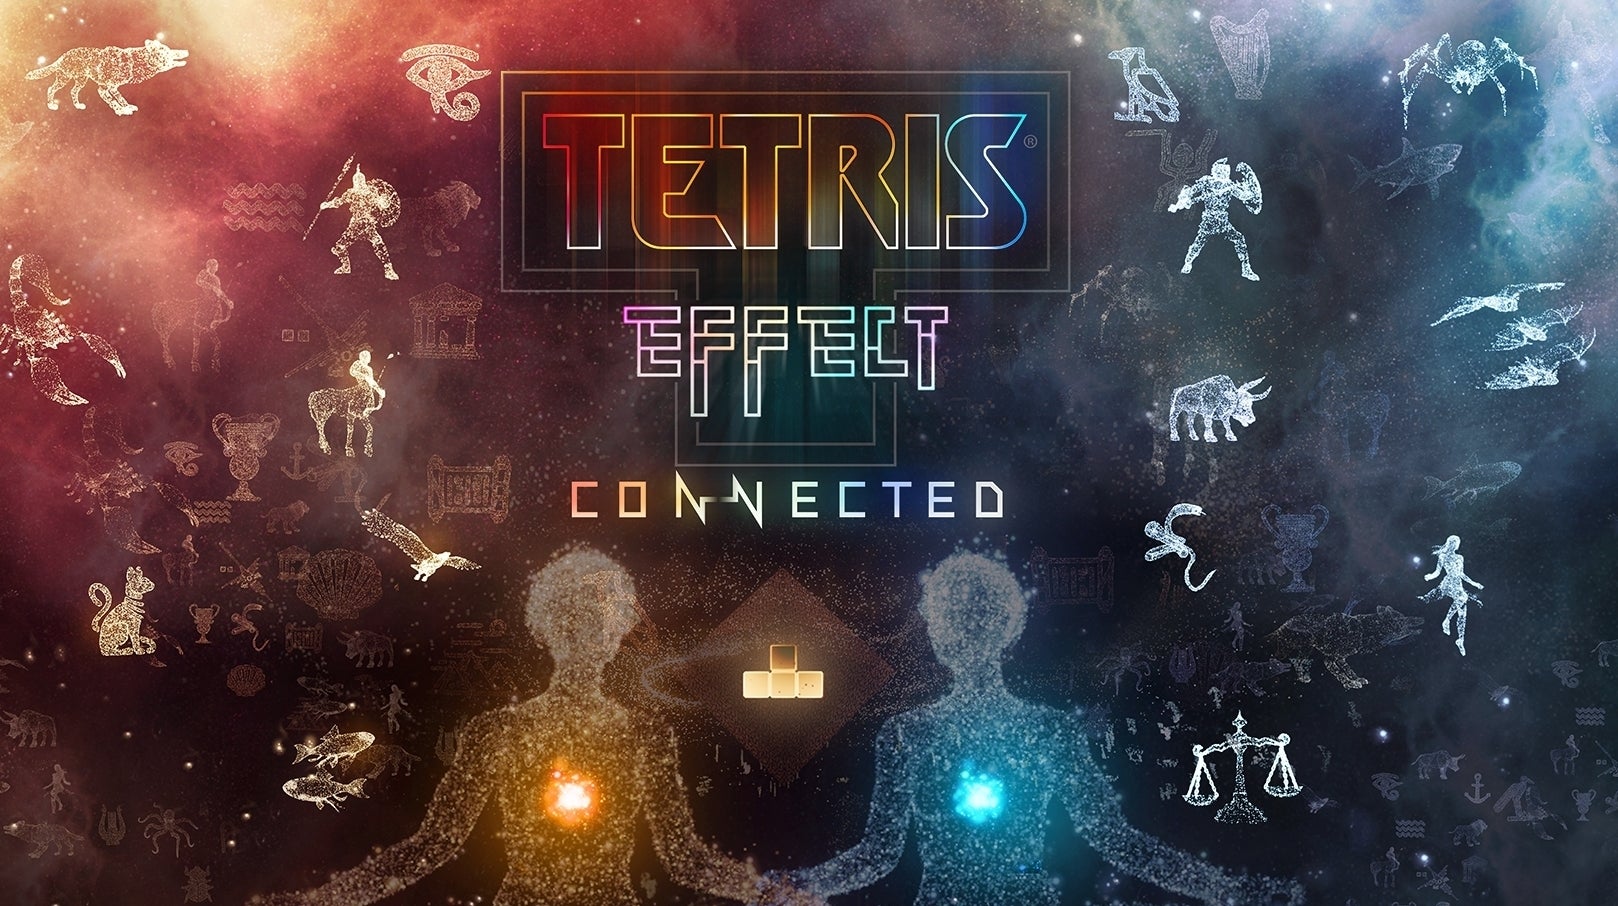 Imagen para Análisis de Tetris Effect: Connected - Lo más cercano a un Tetris 2 que hemos experimentado nunca